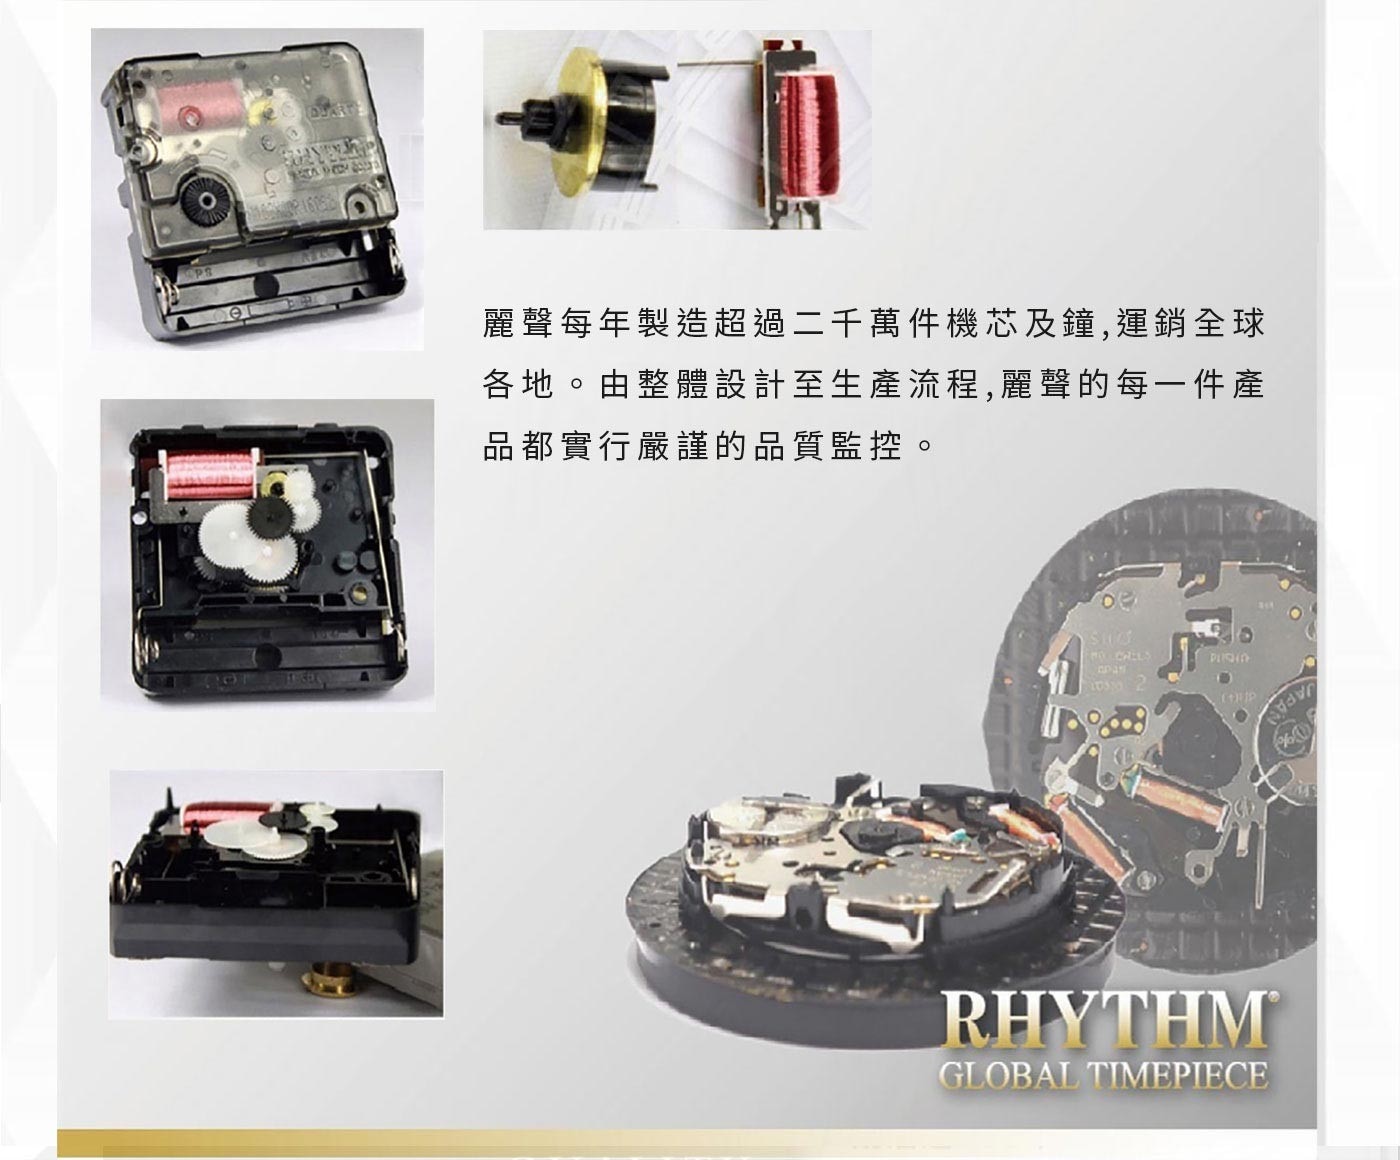 RHYTHM日本麗聲鐘實木掛鐘CMG127NR06，立體數字、實木邊框、凸面玻璃鐘面，鋁鎂合金指針，走時精準，良好驅動機芯，堅固耐用。